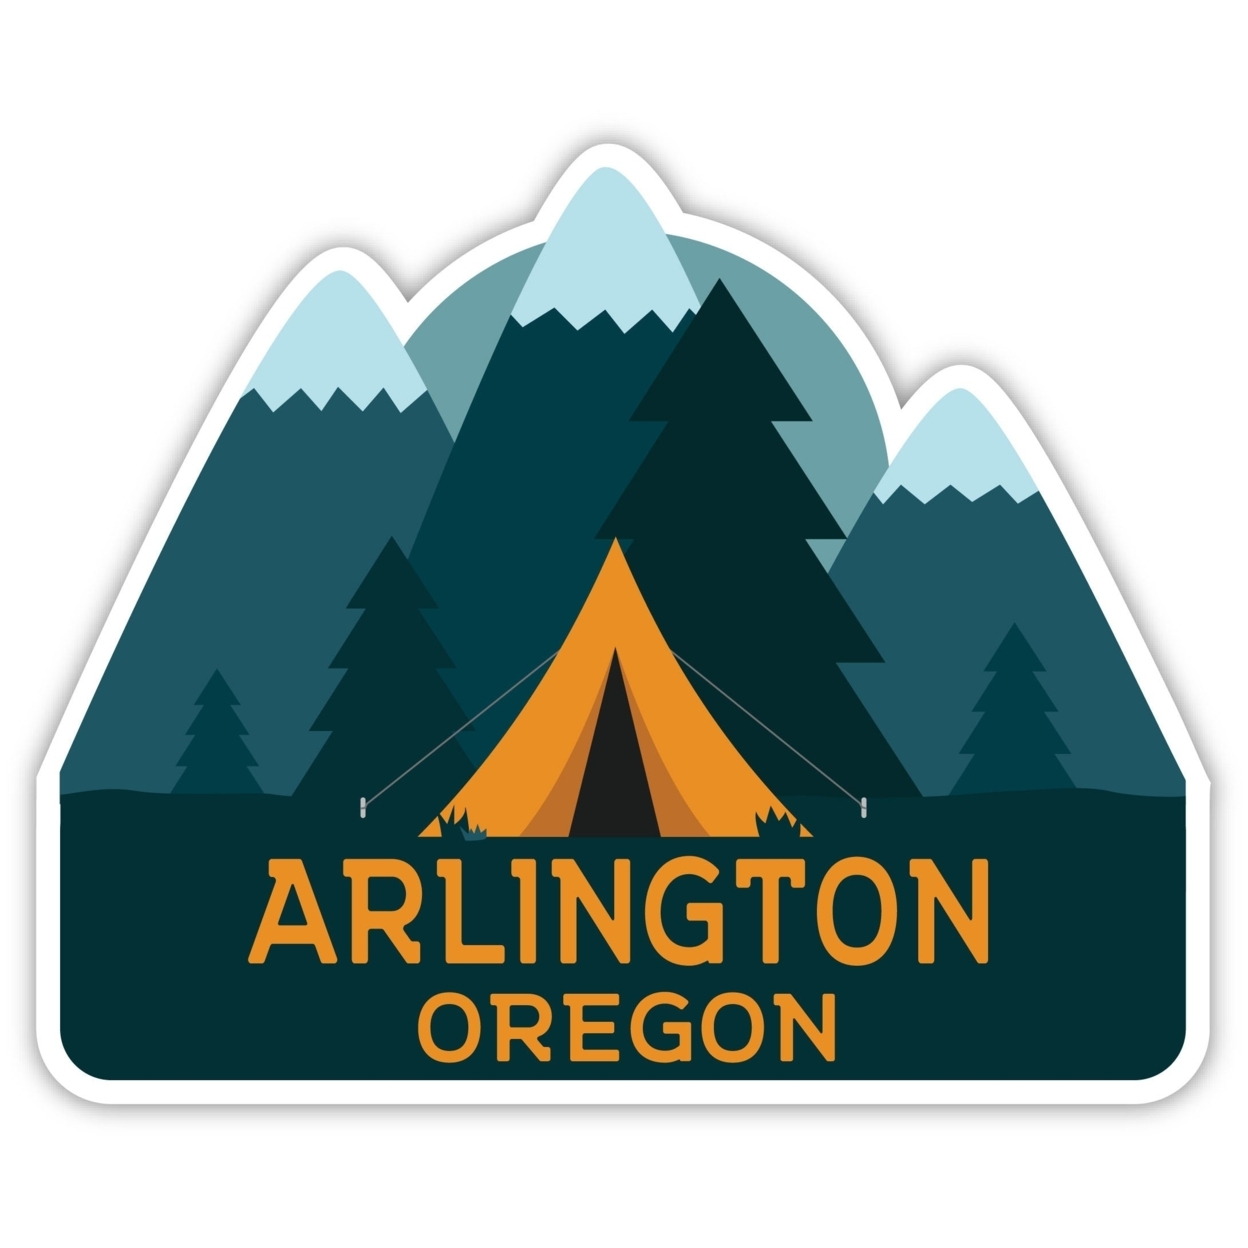 Arlington Oregon Souvenir Decorative Stickers (Choose Theme And Size) - Single Unit, 8-Inch, Tent